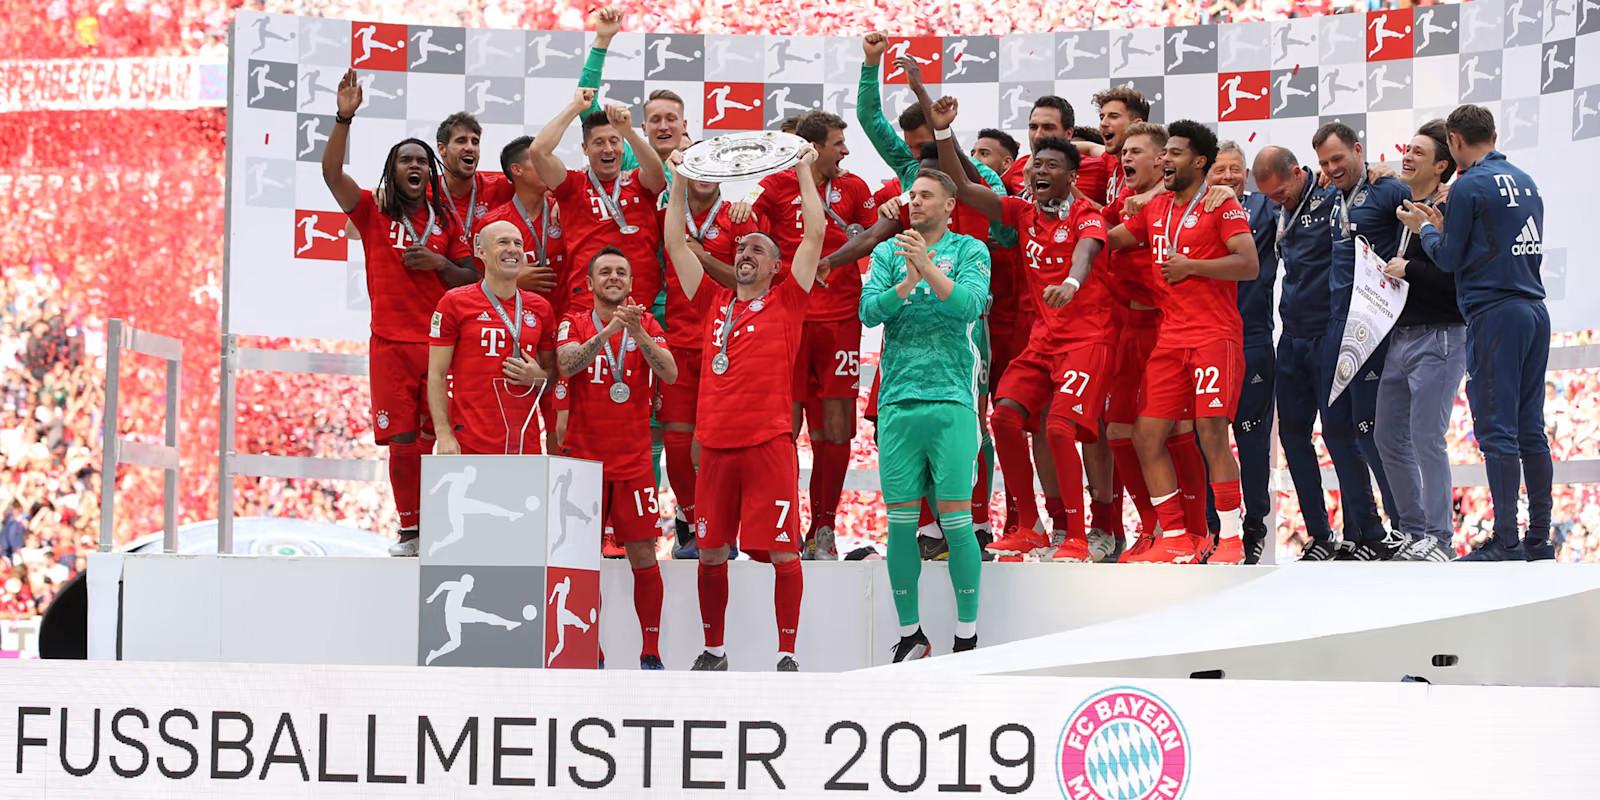 Câu chuyện về kỷ lục 11 năm vô địch Bundesliga của Bayern Munich 455012